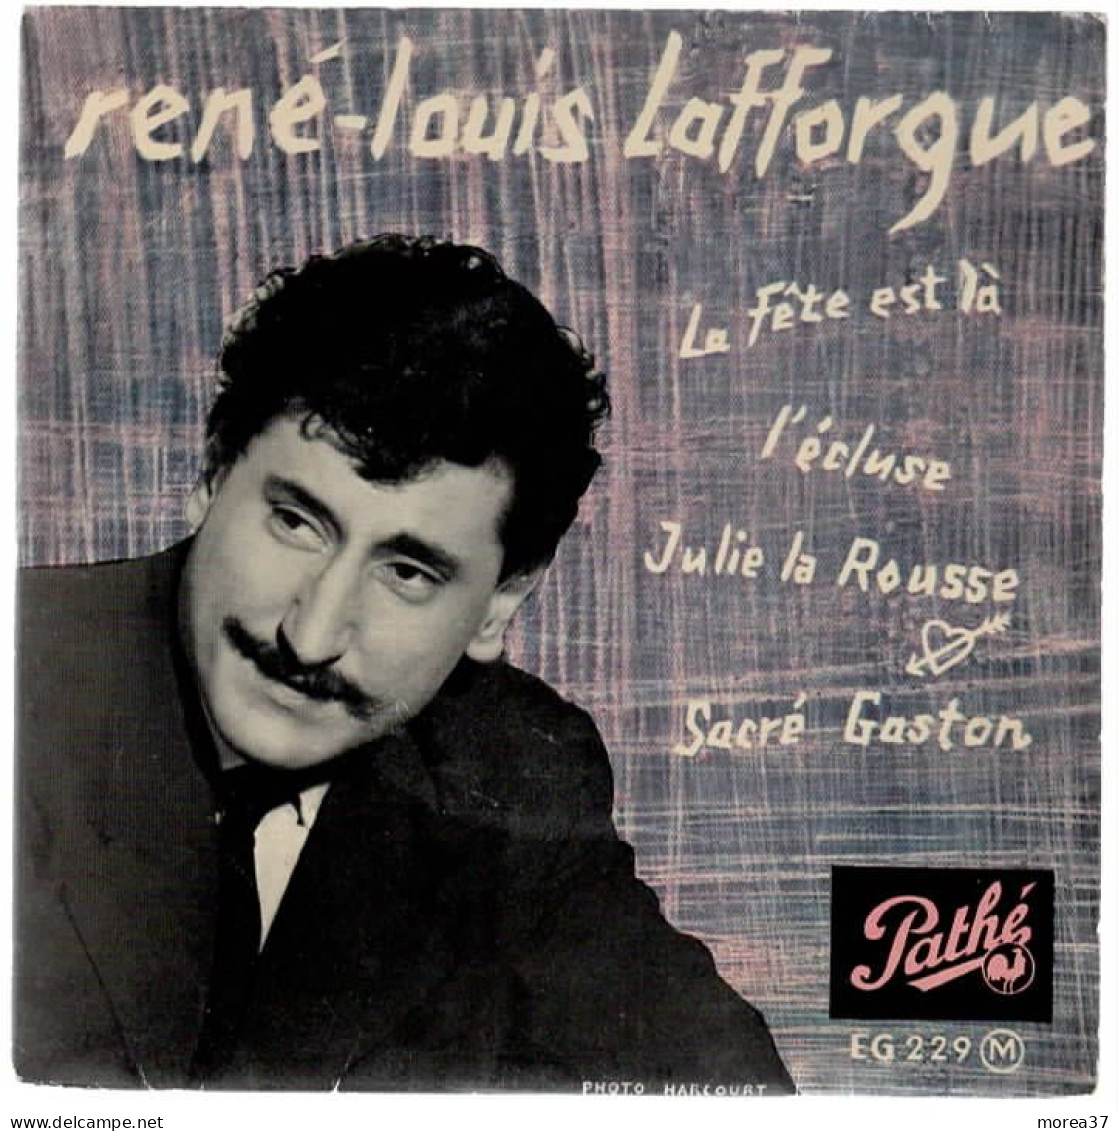 RENE LOUIS LAFFORGUE   La Fête Est La    PATHE EG 229 M - Other - French Music